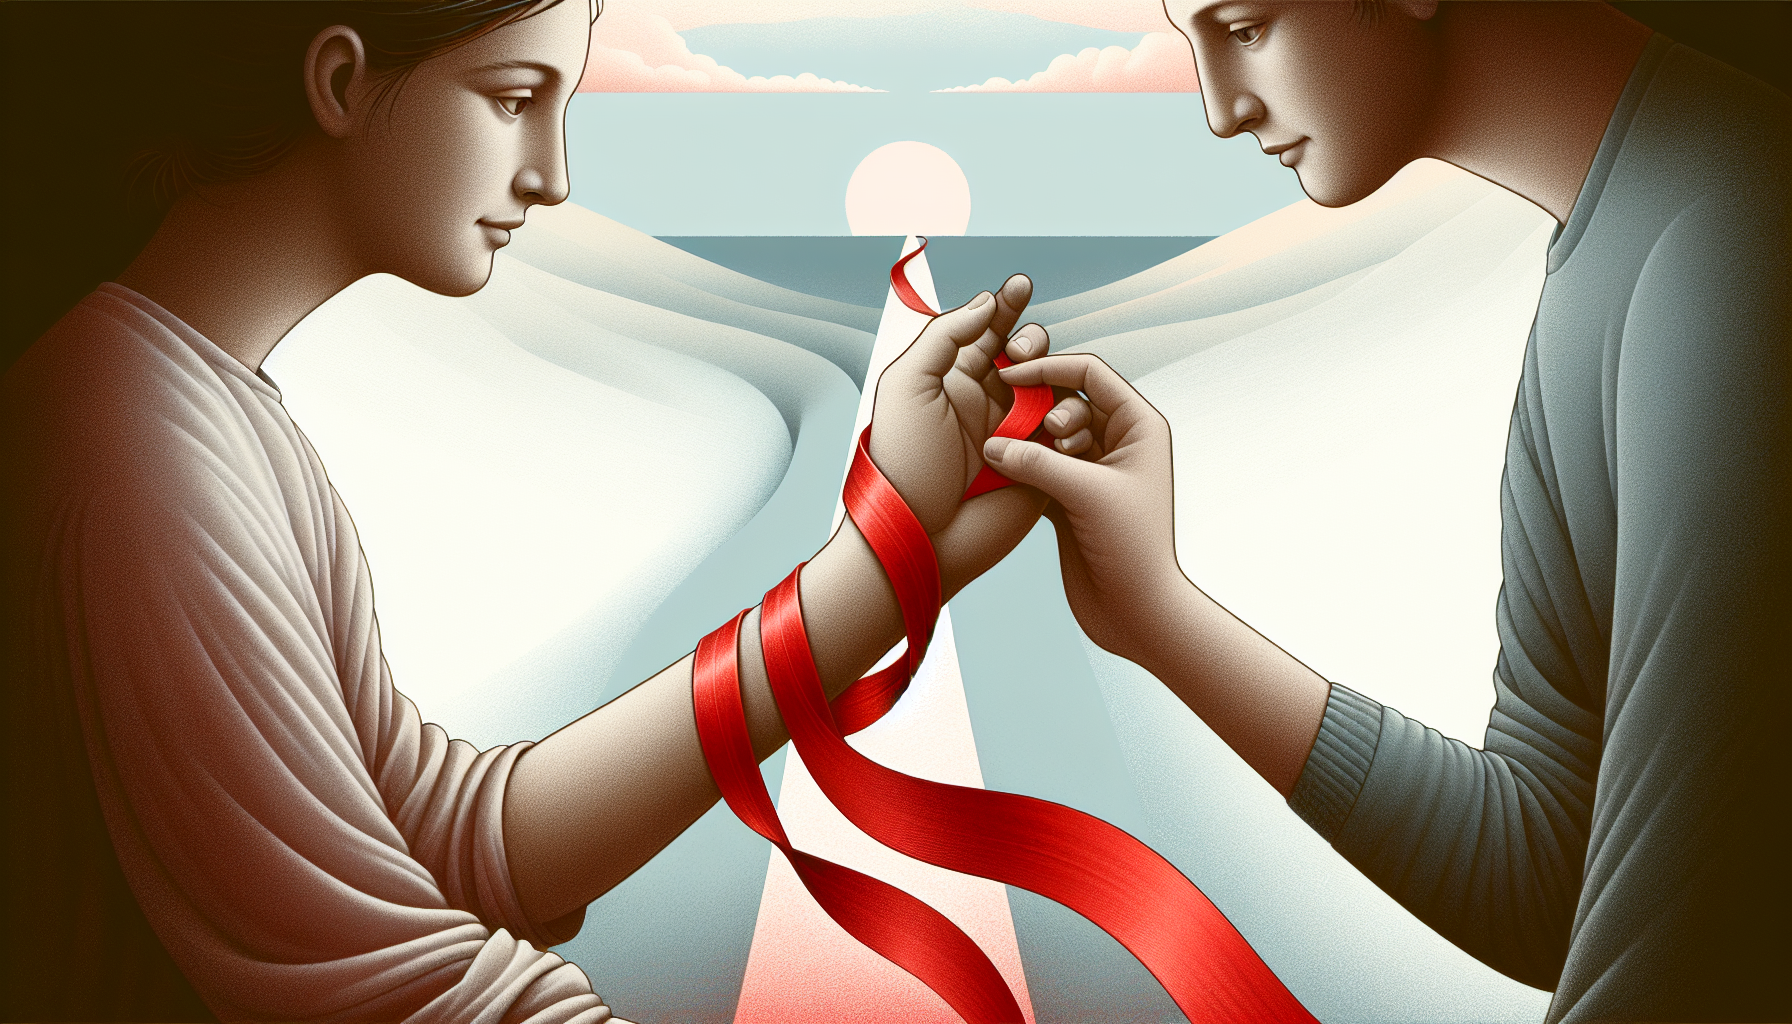 Illustration of a trust symbolizing the psychological play of bondage